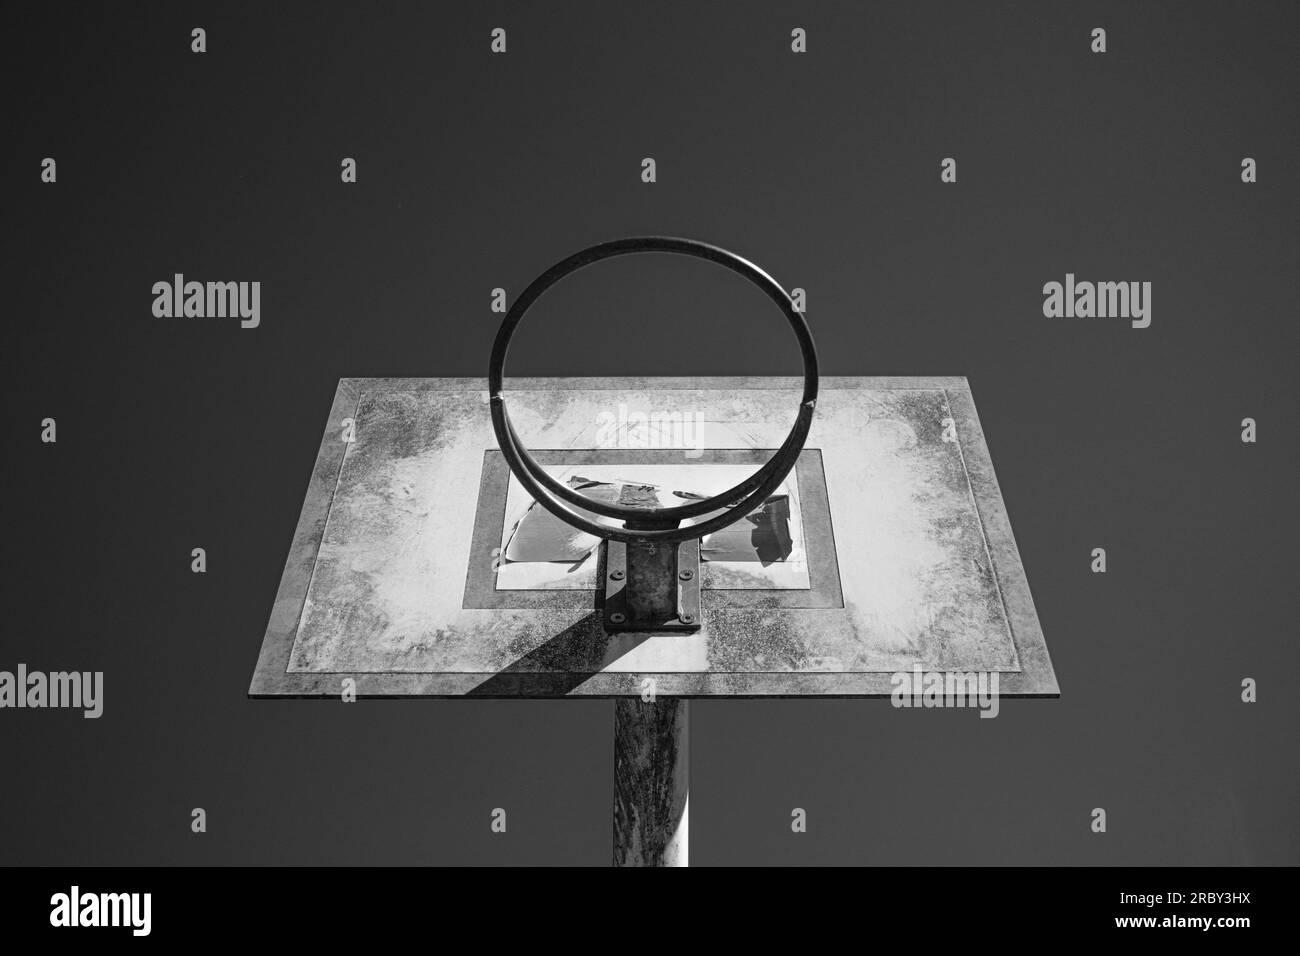 vista monocromatica grintosa e cruda del canestro da basket girato dal basso e centrato Foto Stock